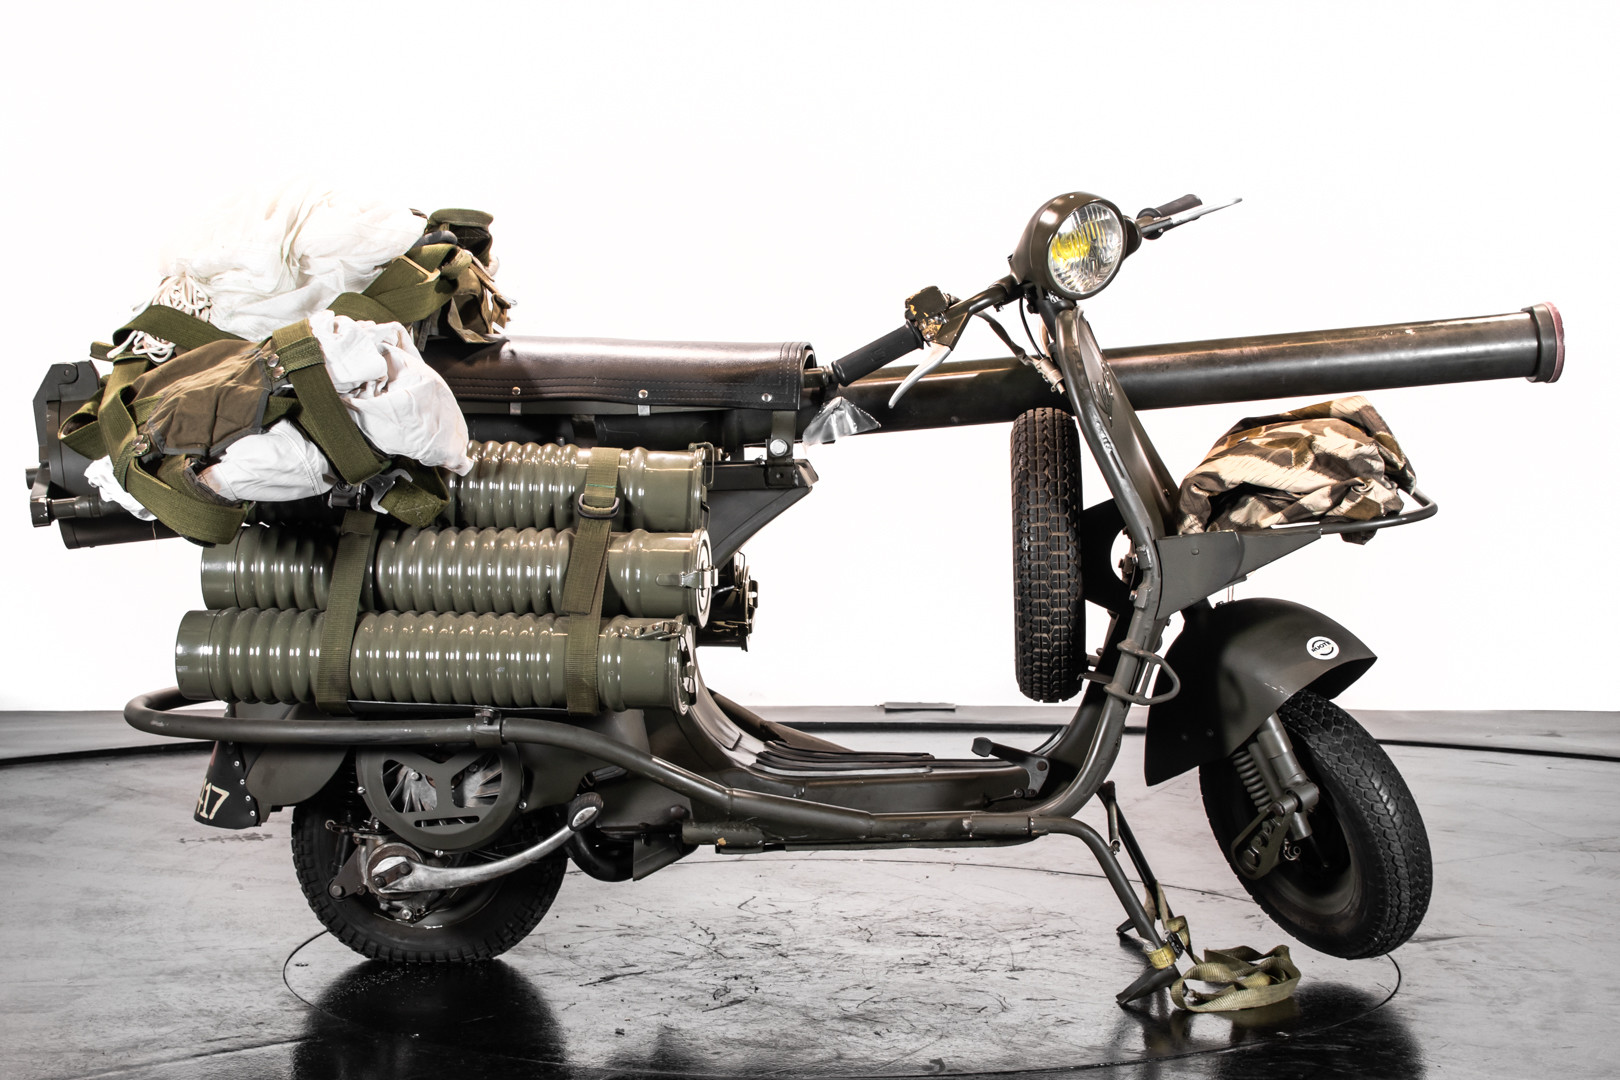 1956 Piaggio Vespa 150 TAP Militare - Classic motorbikes - Ruote da Sogno